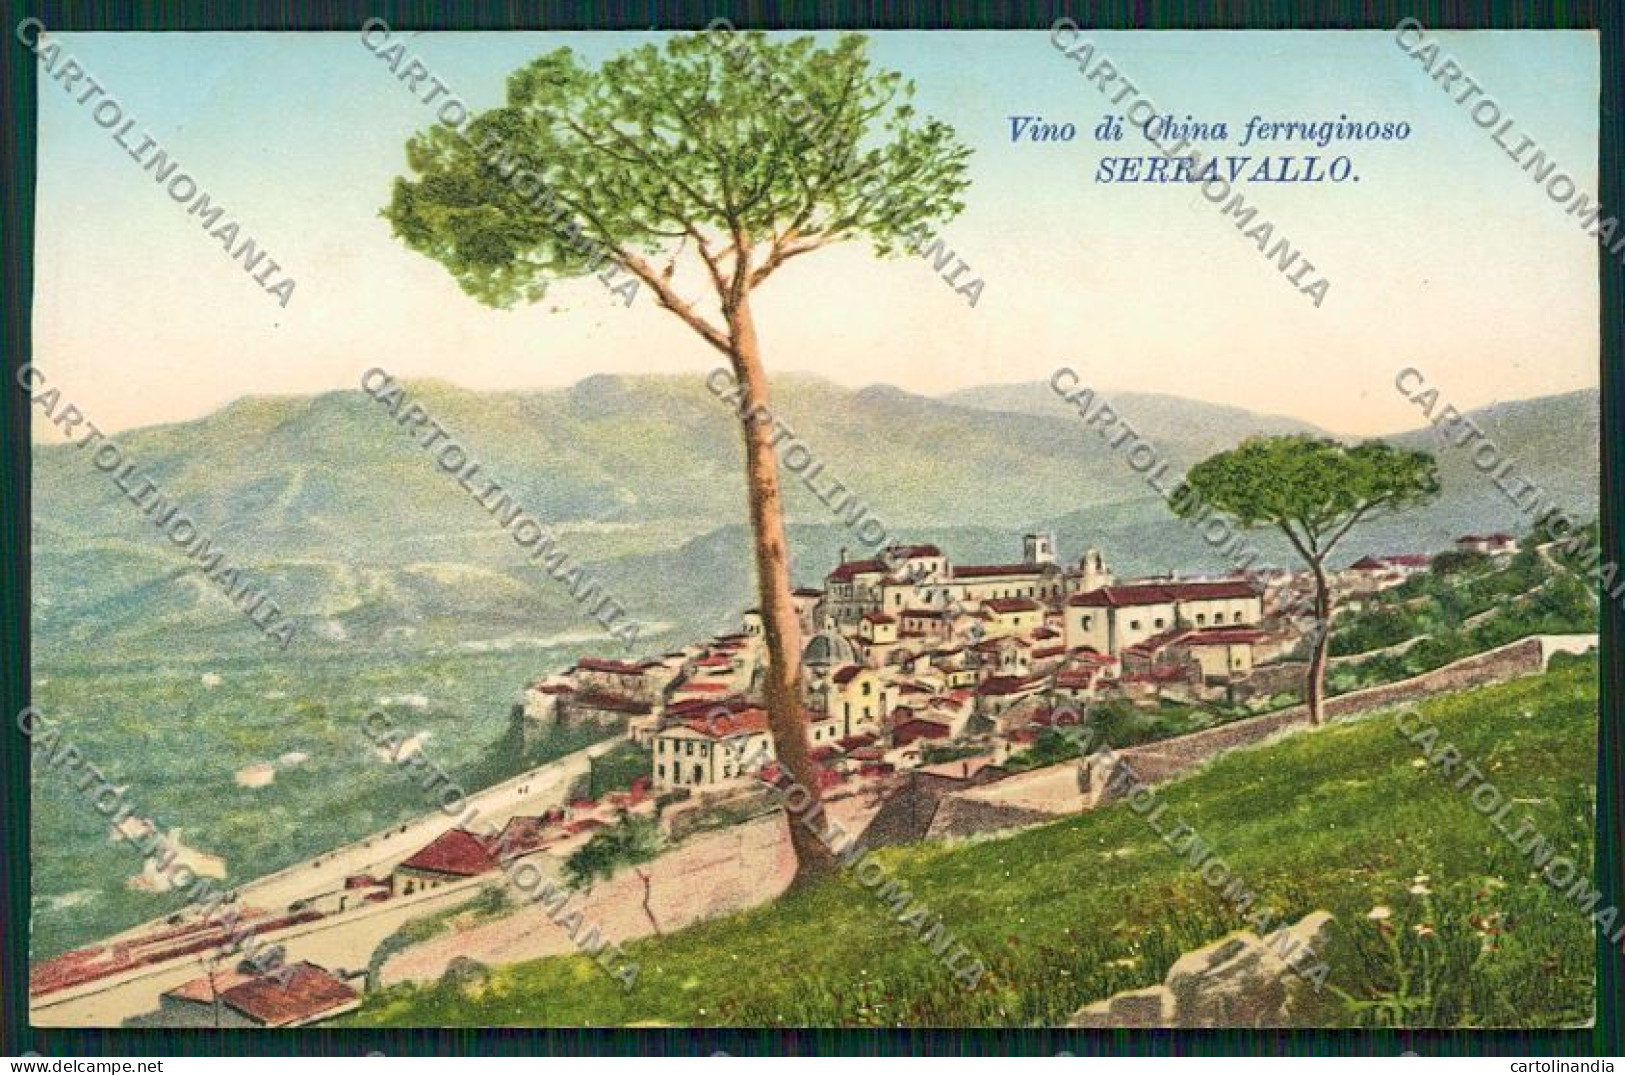 Trieste China Ferruginoso Serravallo Pubblicitaria Monreale Cartolina ZC0971 - Trieste